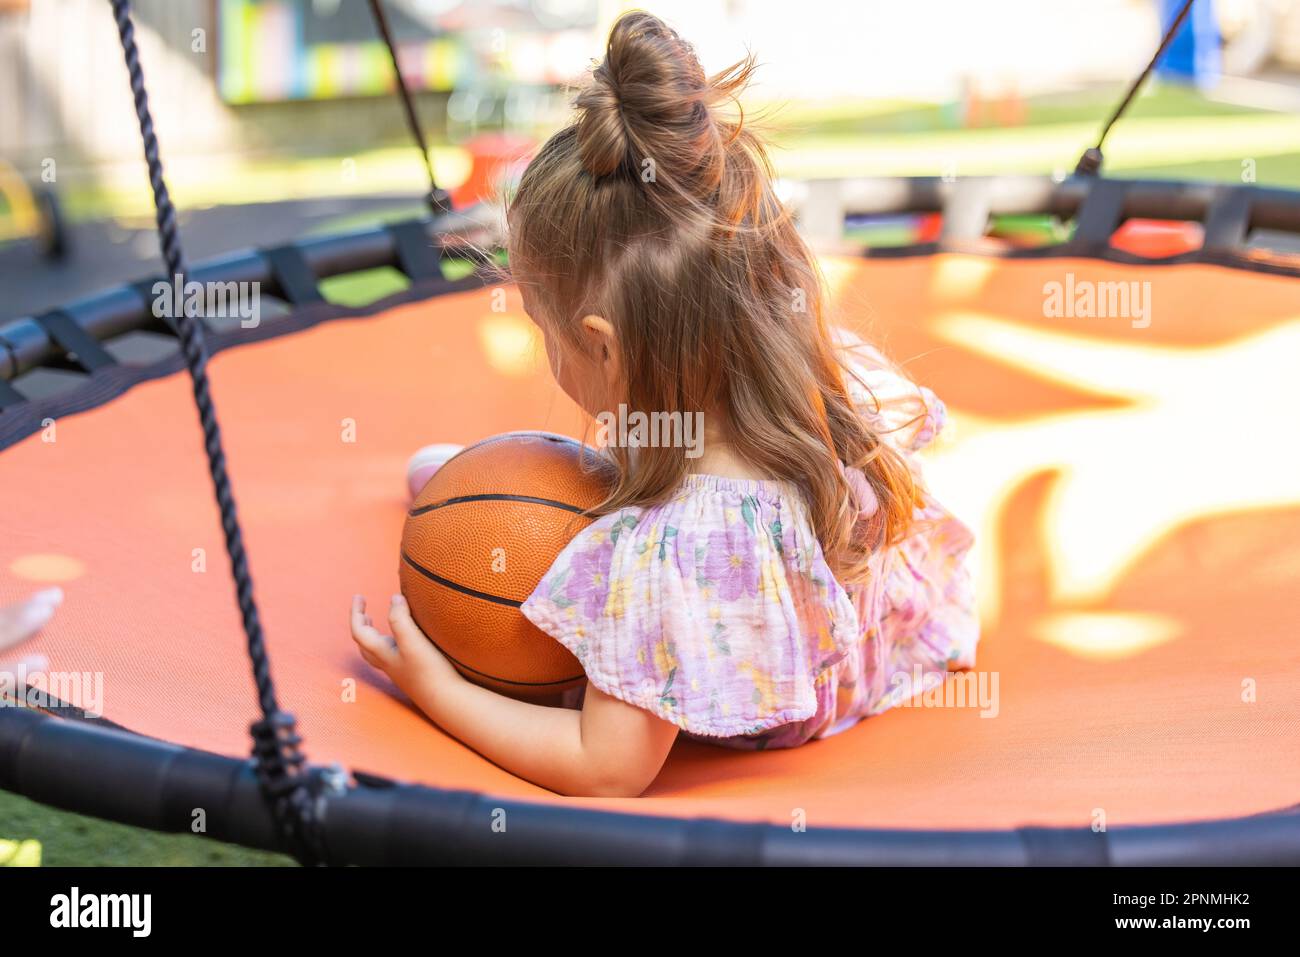 Enfant d'âge préscolaire jouant dans une cour de jardin d'enfants en plein air animée Banque D'Images